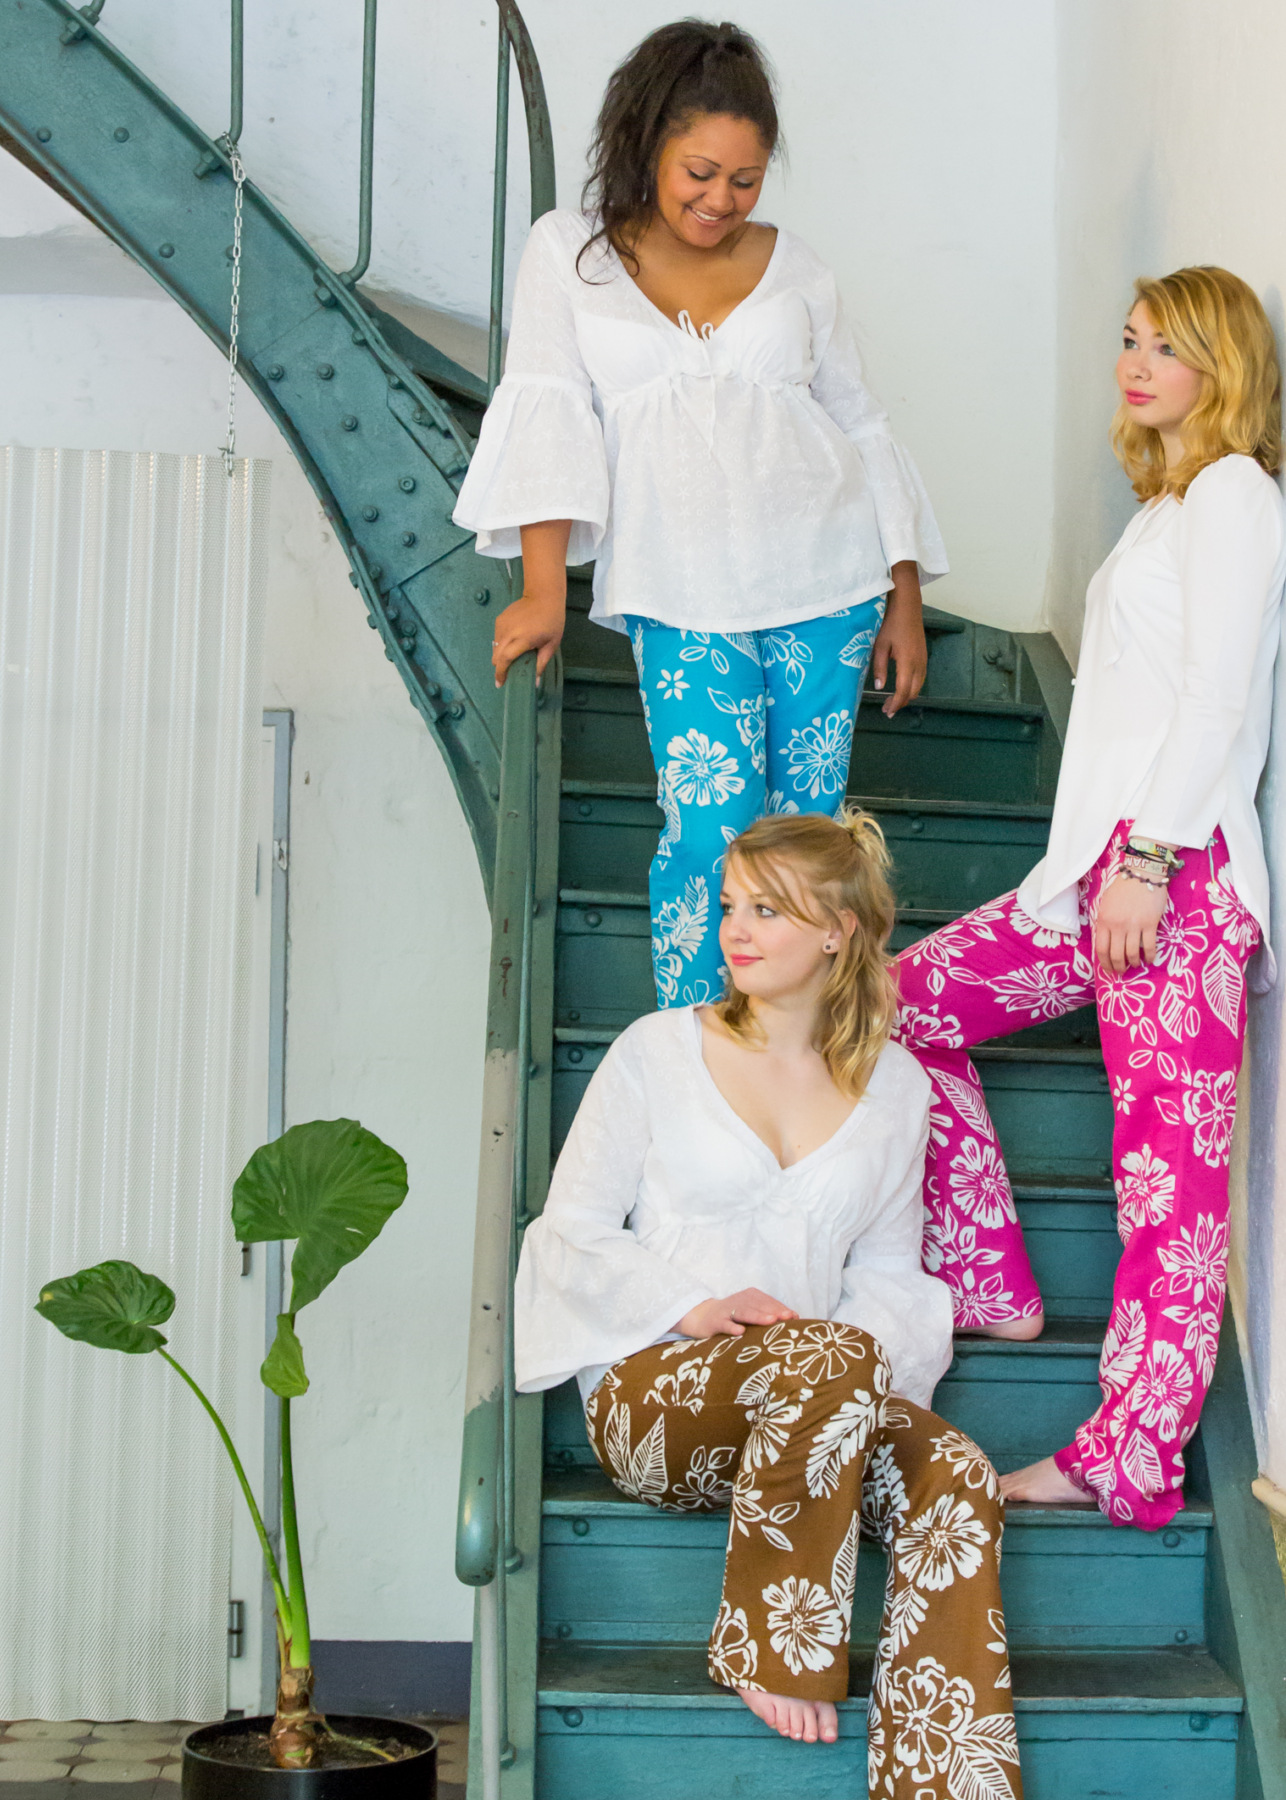 Kissed by Style - Fashion Online Shop - Junge Mode für Frauen 
Summer Collection 2015